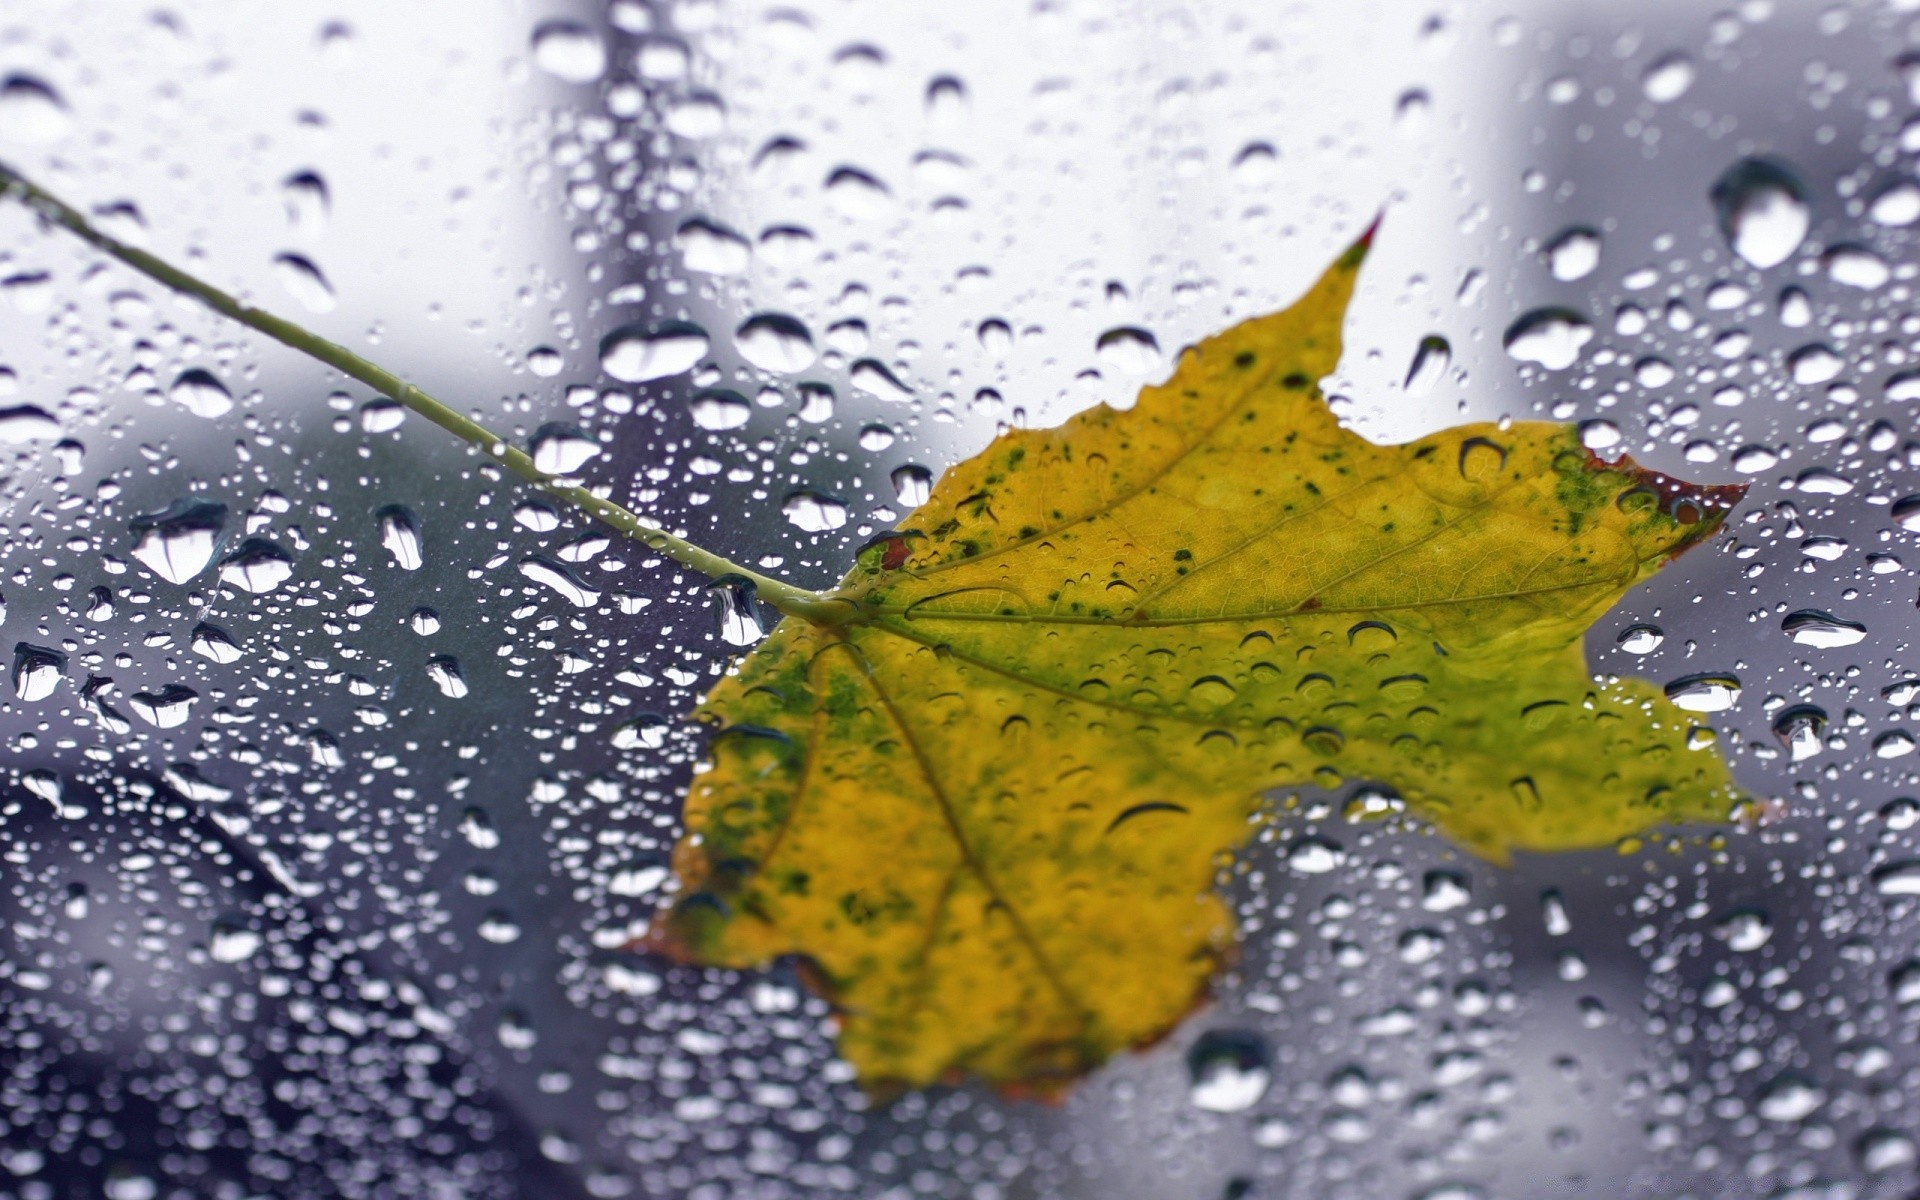 макросъемка дождь мокрый падение росы воды капли пузырь всплеск лист жидкость чистые капли осень природа водослива чистота понятно отражение